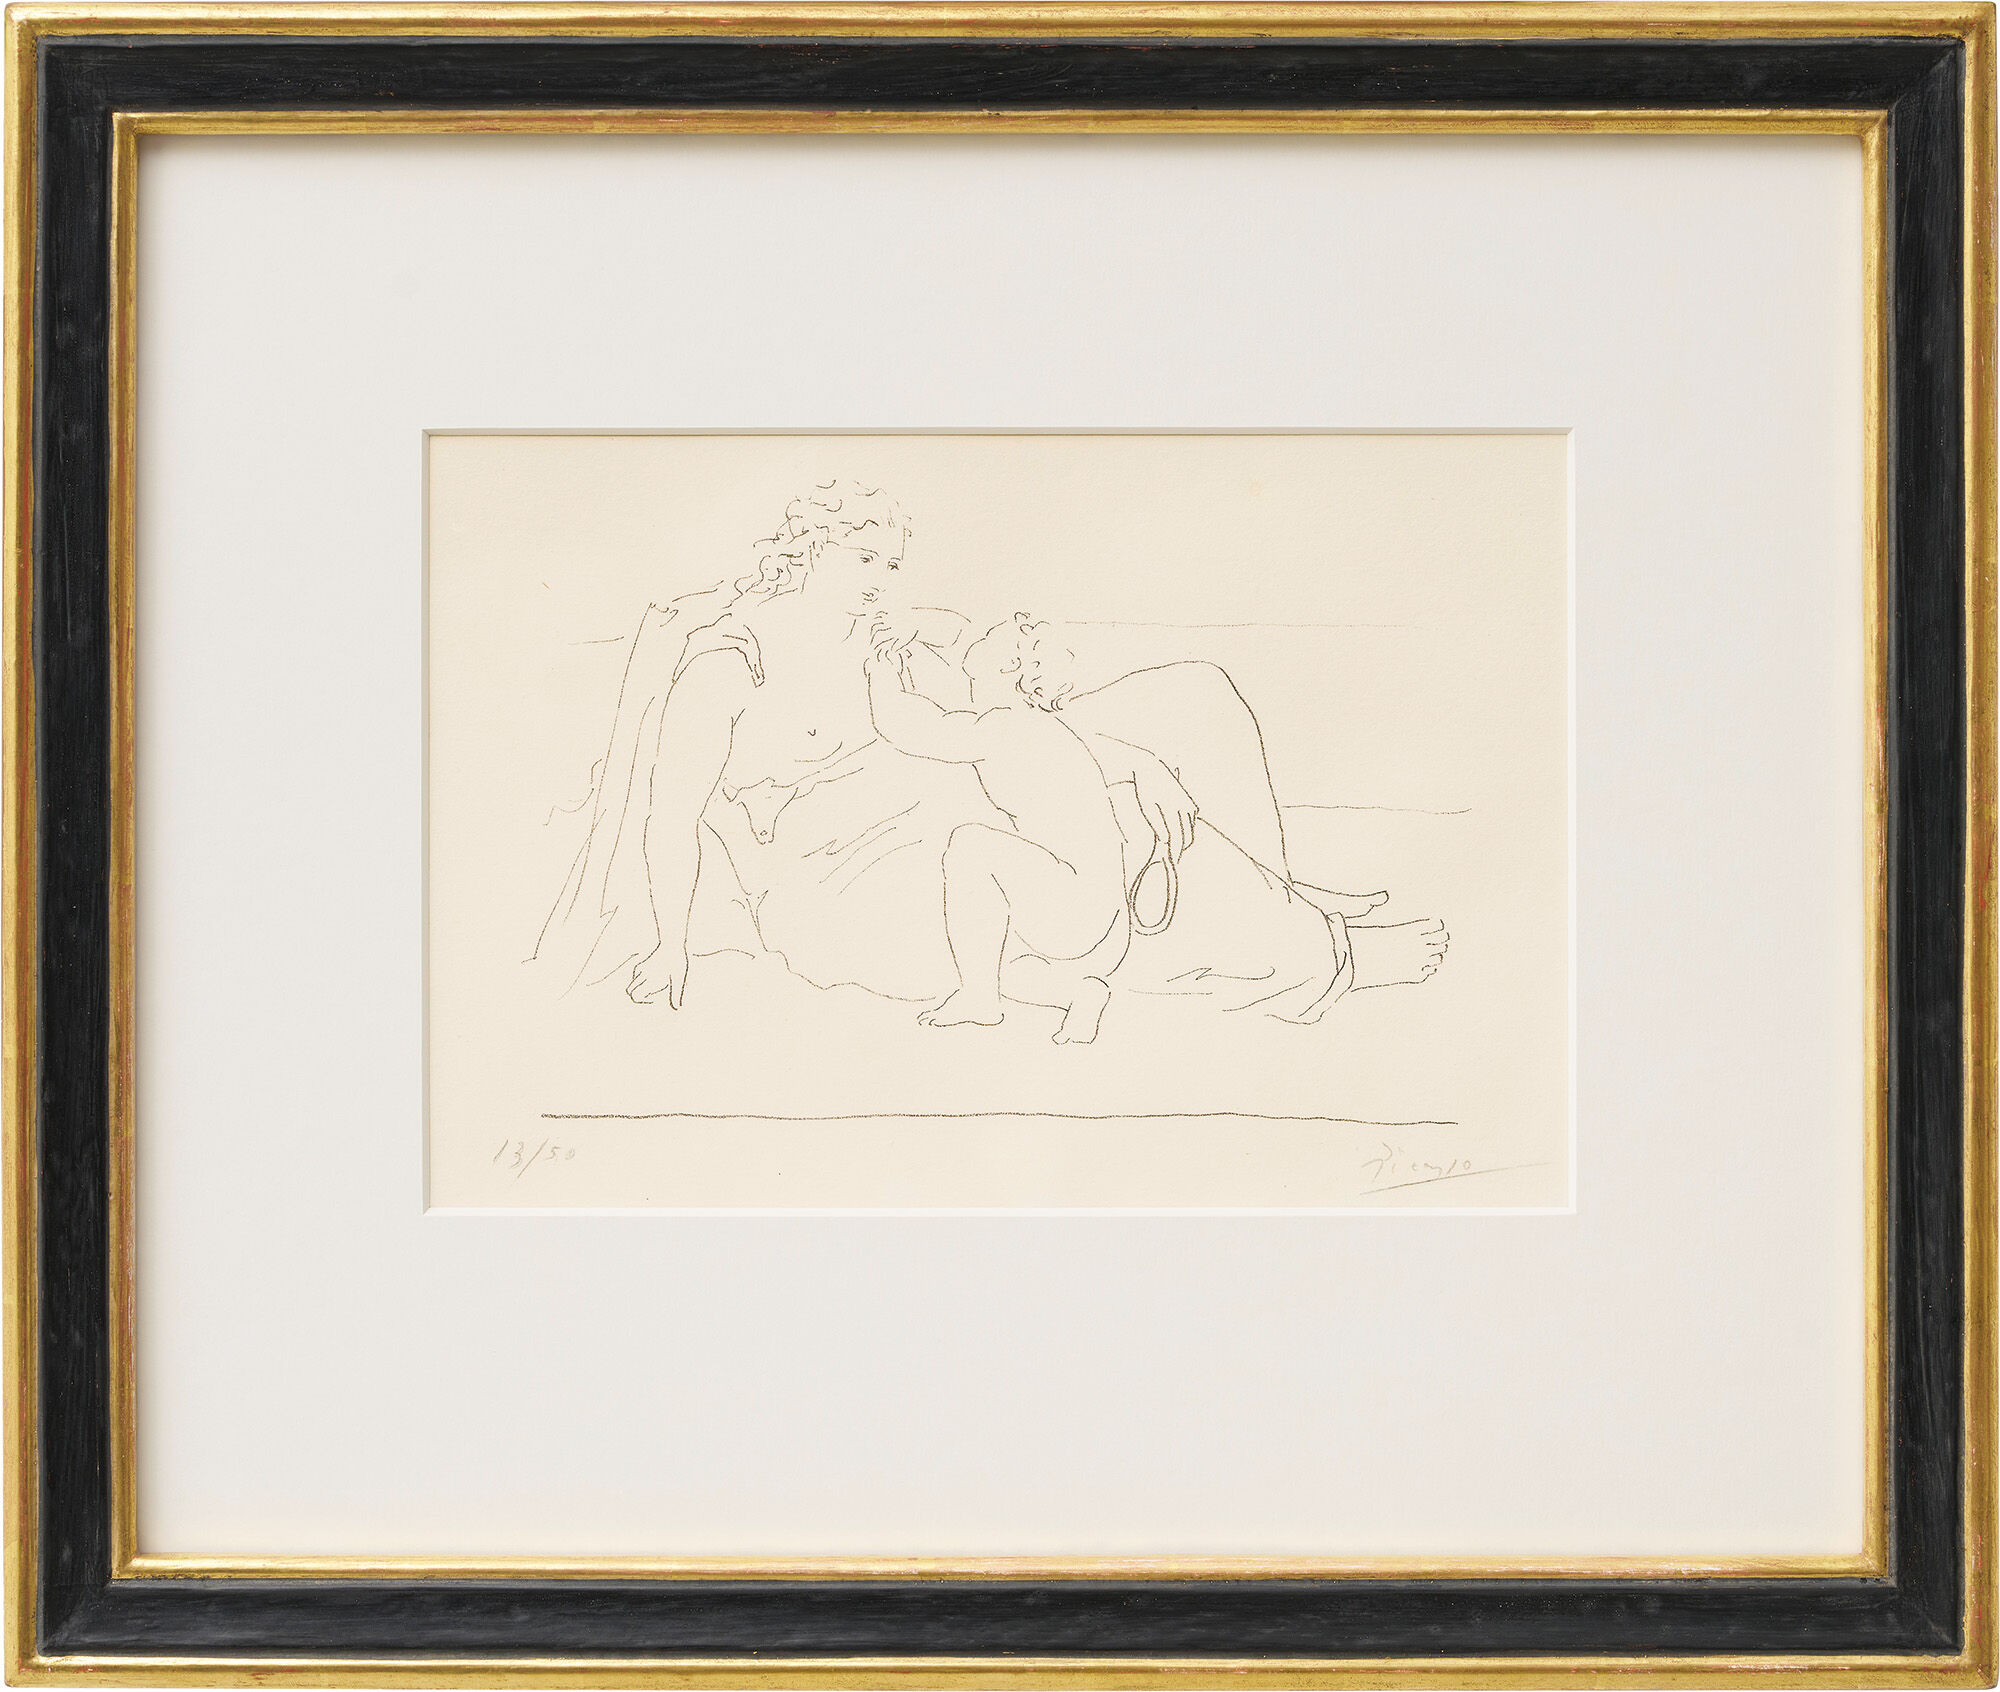 Picture "Femme et enfant" (1923) by Pablo Picasso